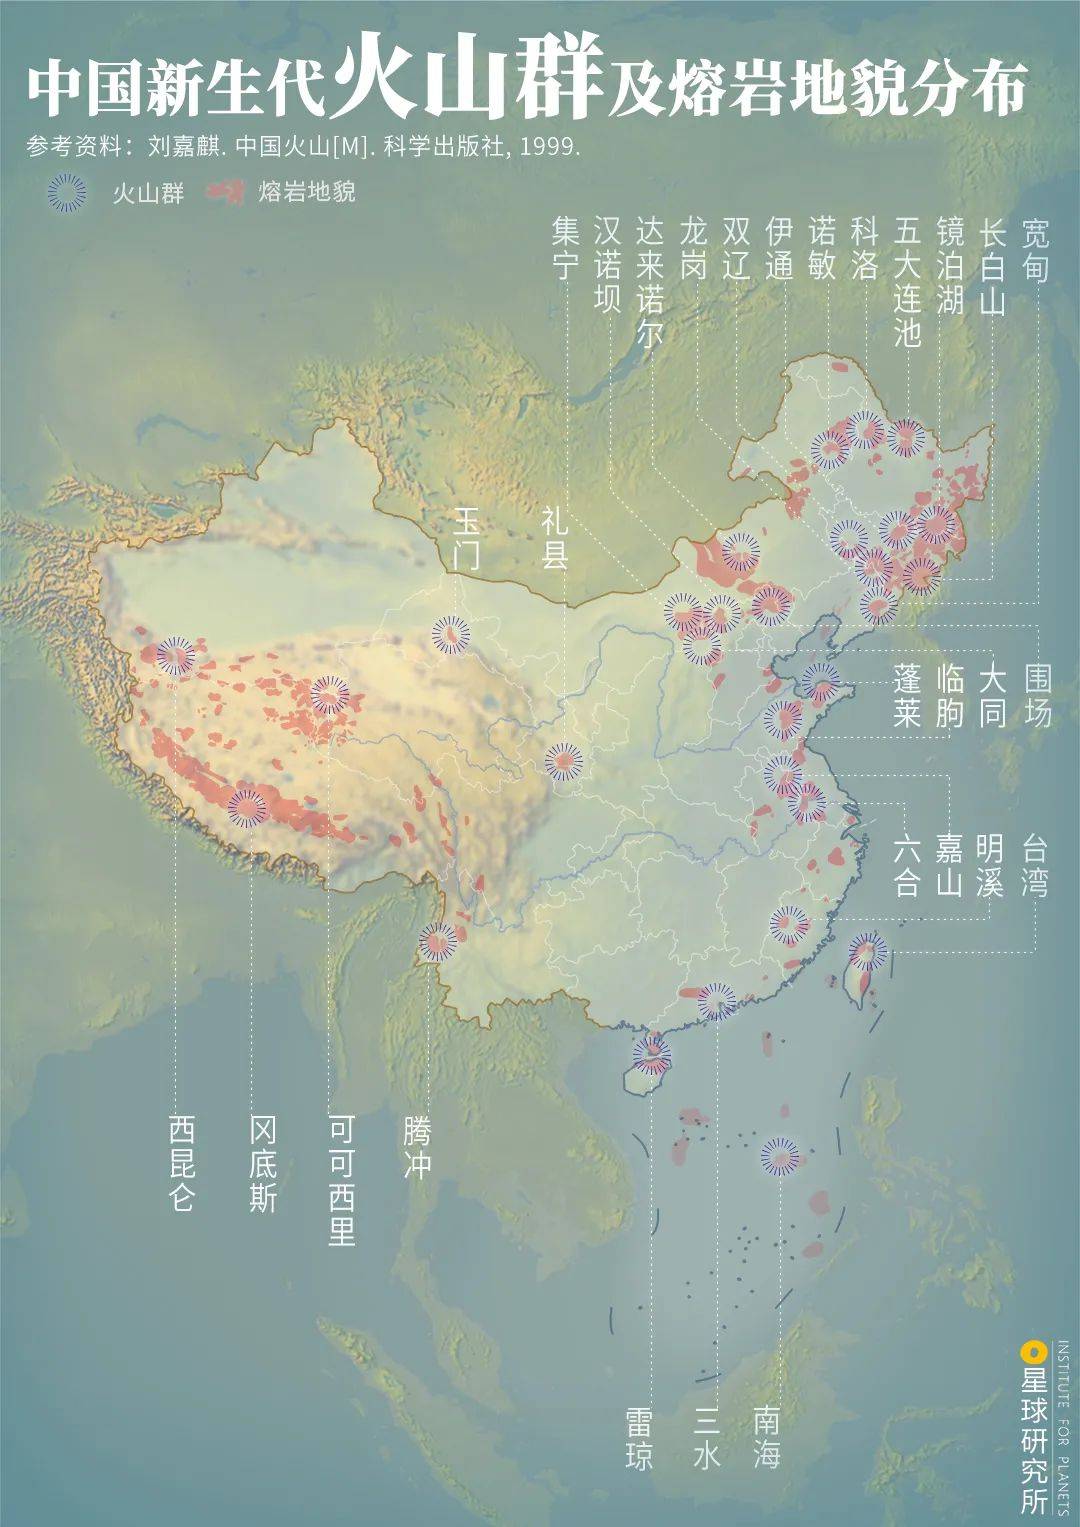 中国的火山在哪里?